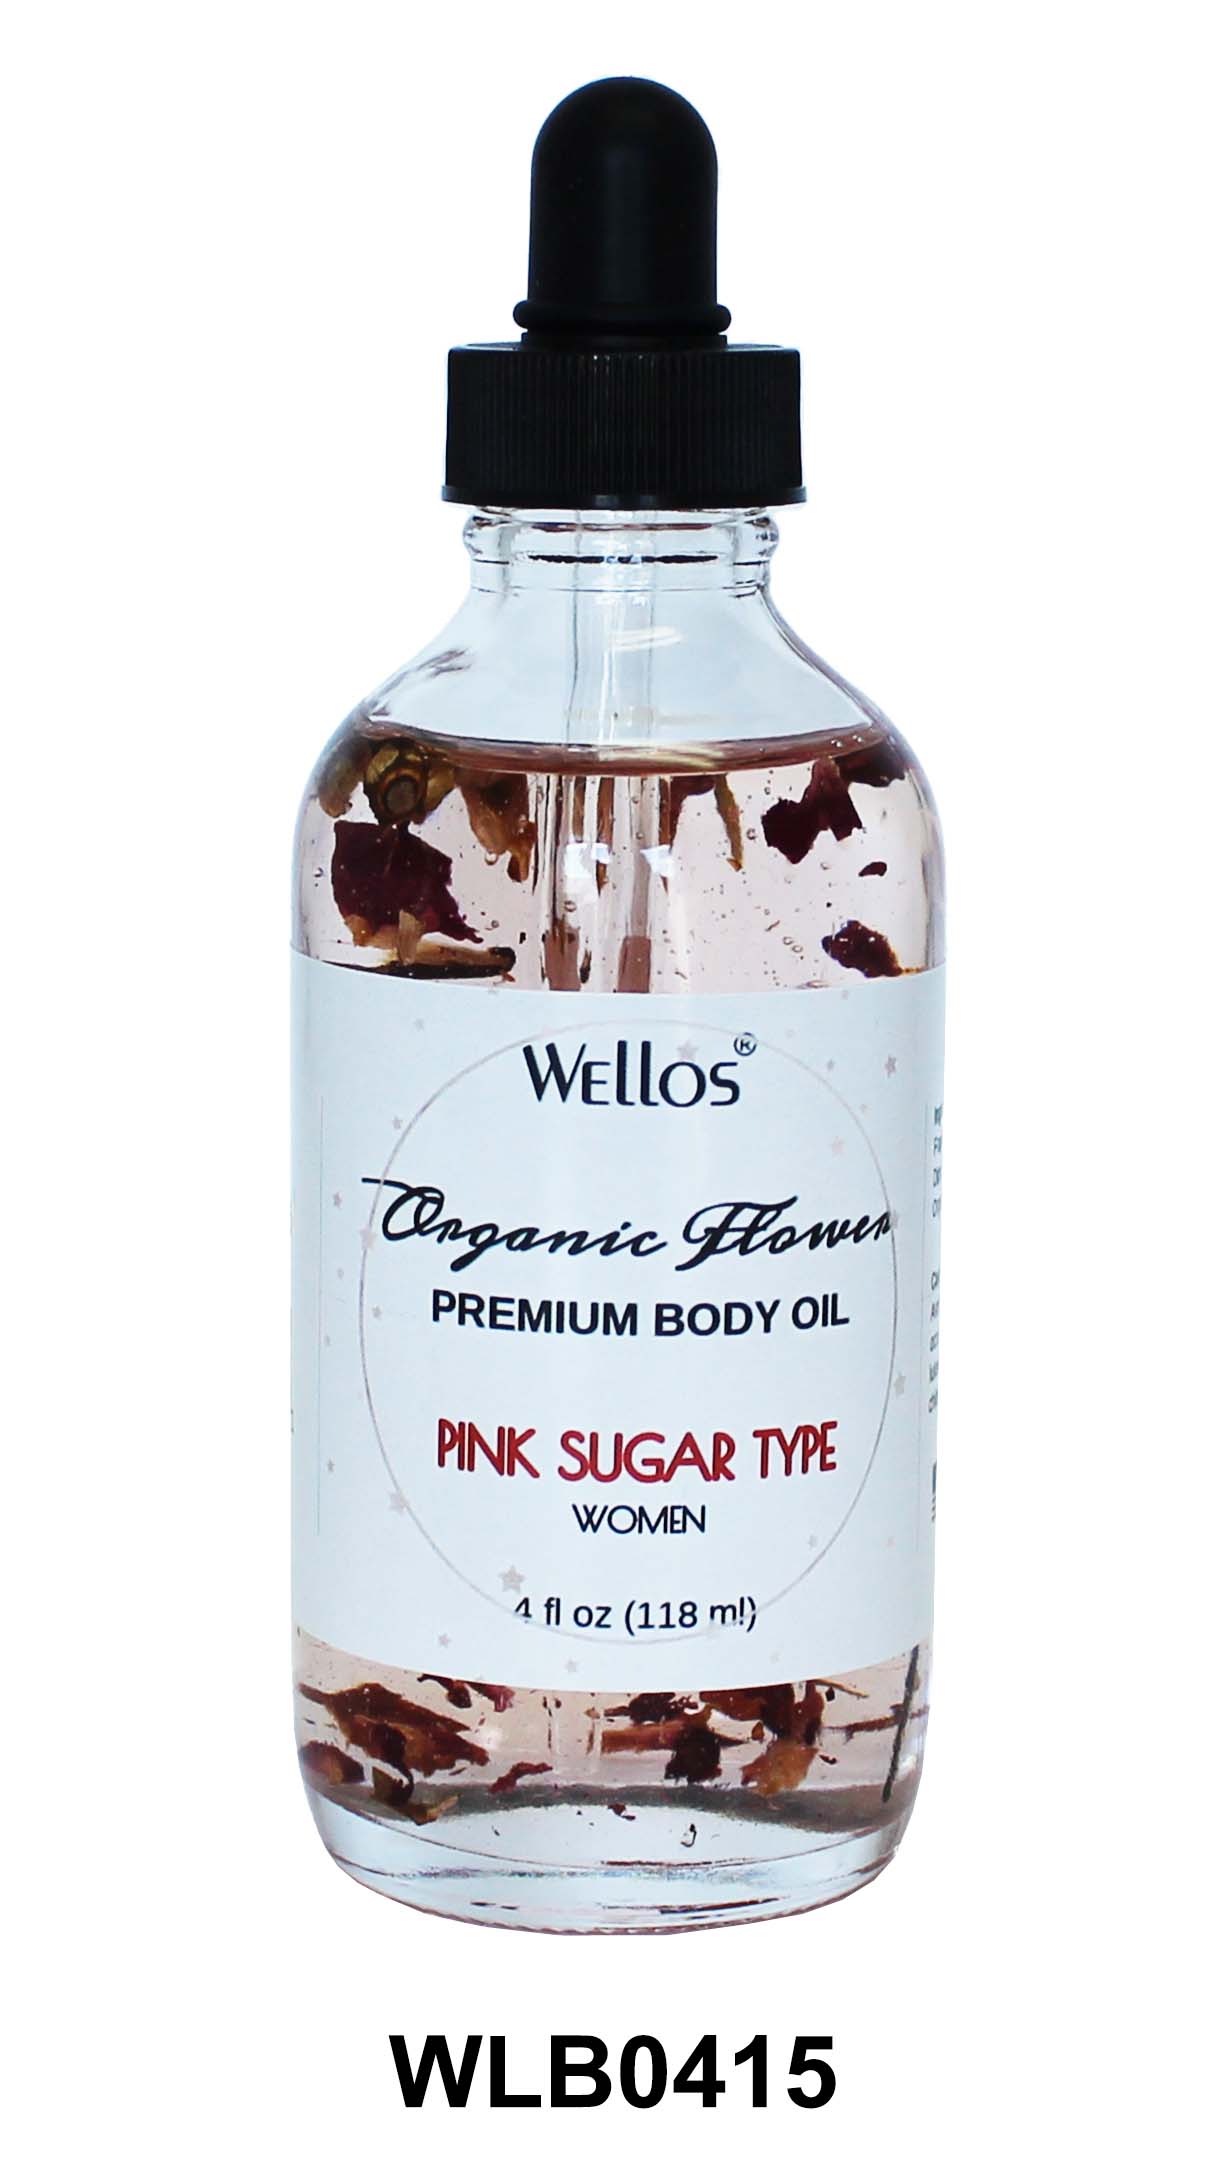 Pink Sugar Body Oil (W)